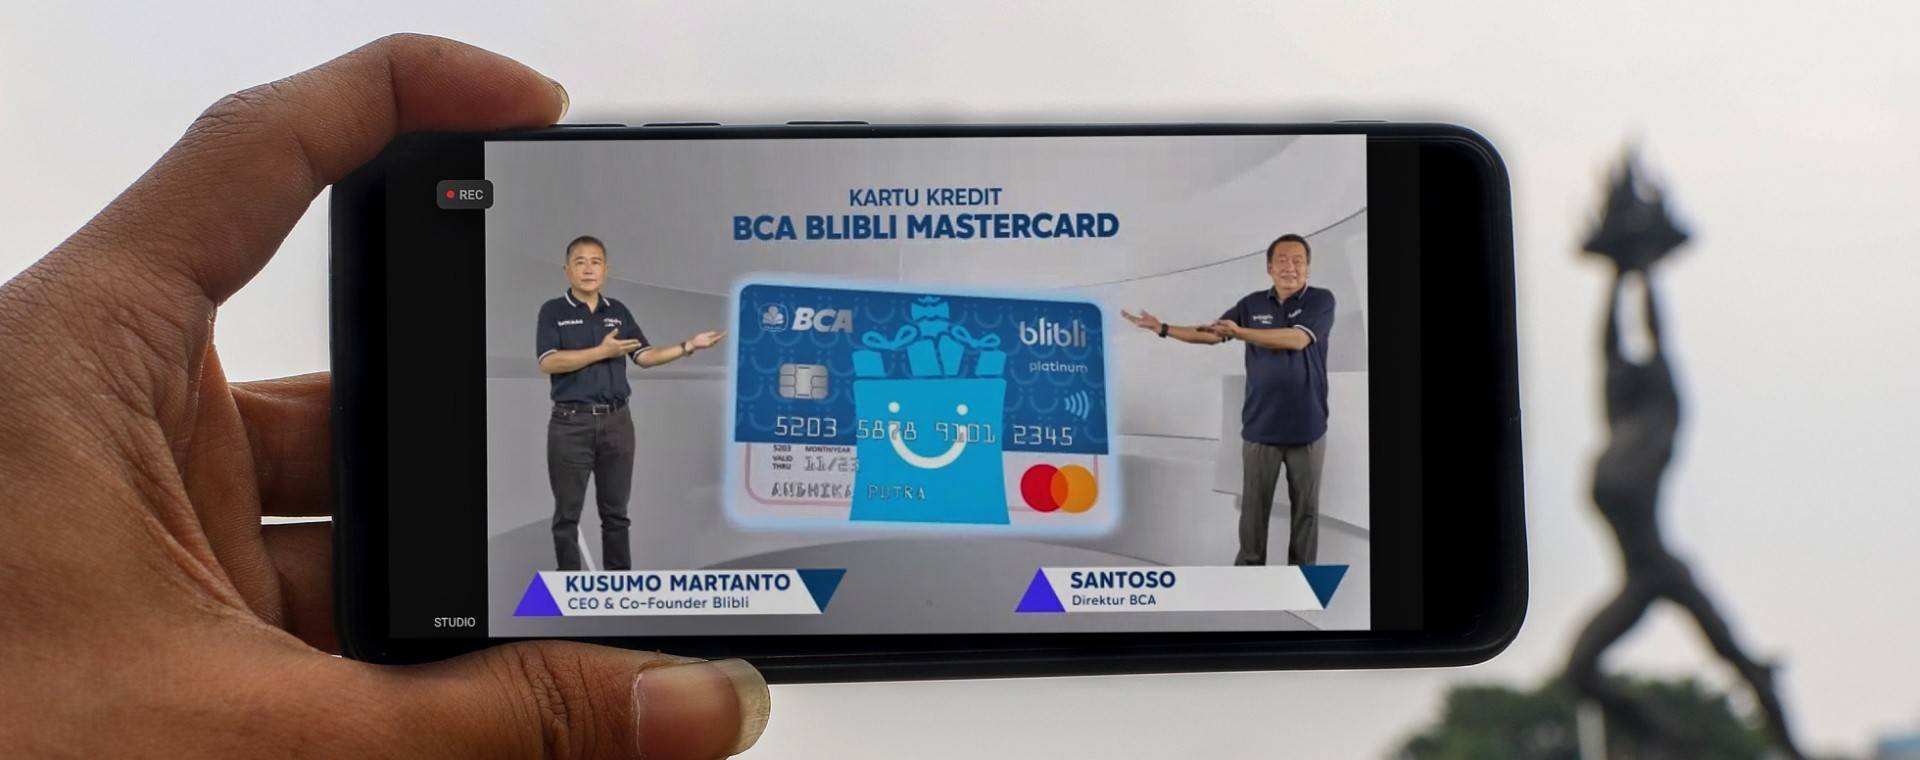 Tampilan layar menampilkan CEO & CO-Founder Blibli, Kusumo Martanto (kiri) bersama dengan Direktur PT Bank Central Asia Tbk. (BBCA) Santoso (kanan) saat peluncuran Kartu Kredit BCA Blibli Mastercard di Jakarta, Senin (11/10/2021). - Bisnis / Eusebio Chrysnamurti